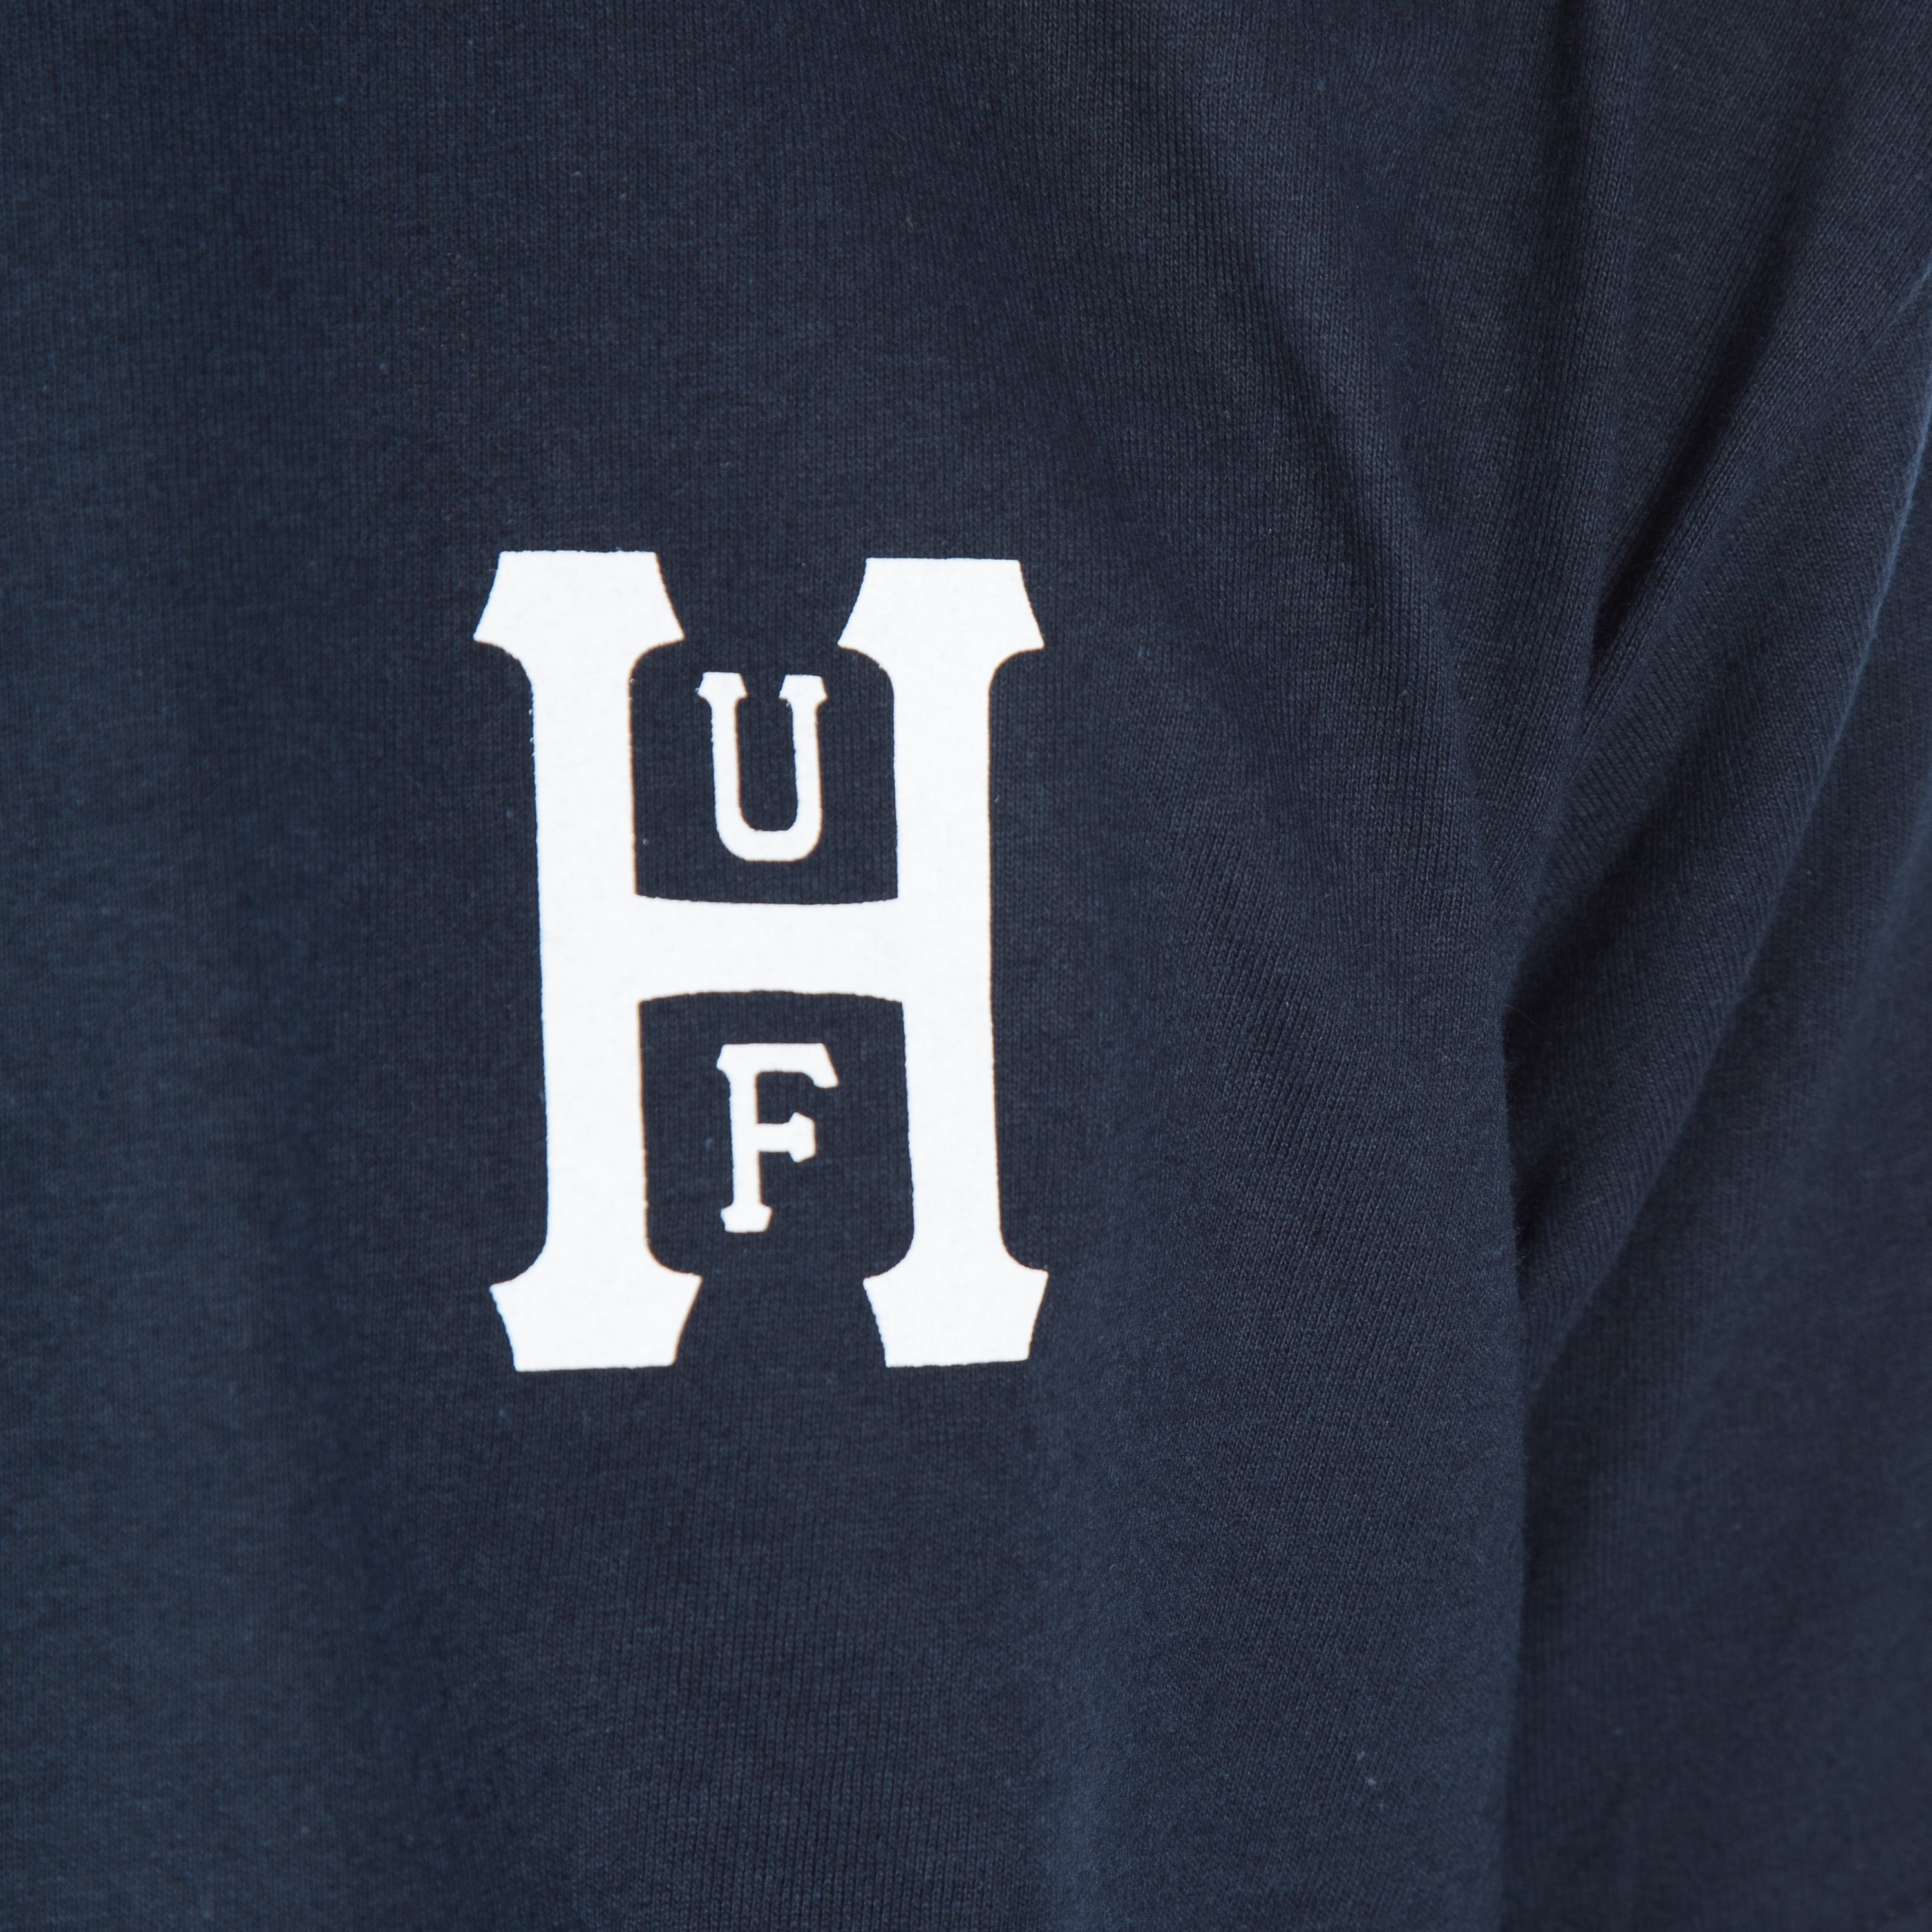 HUF Classic H Worldwide T-Shirt (Navy) - Consortium.